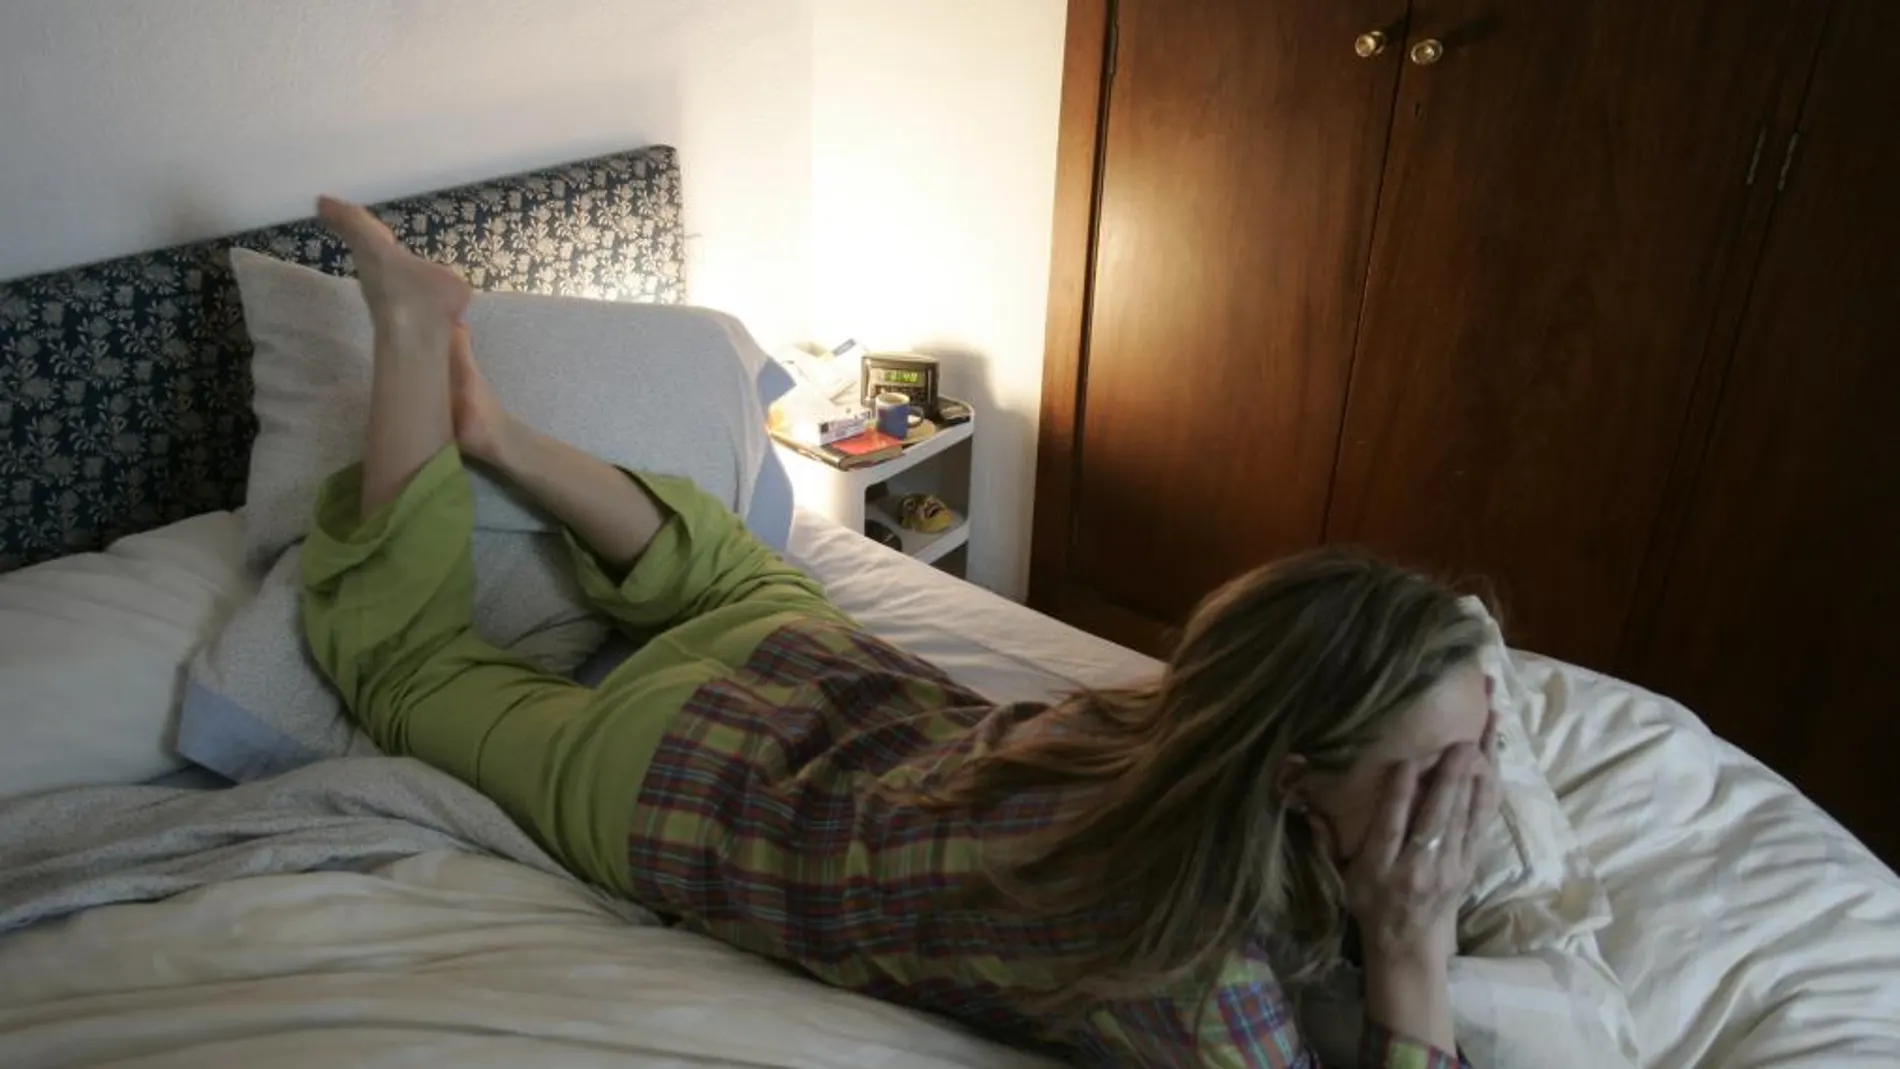 El síndrome de piernas inquietas causa insomnio y trastornos en el sueño